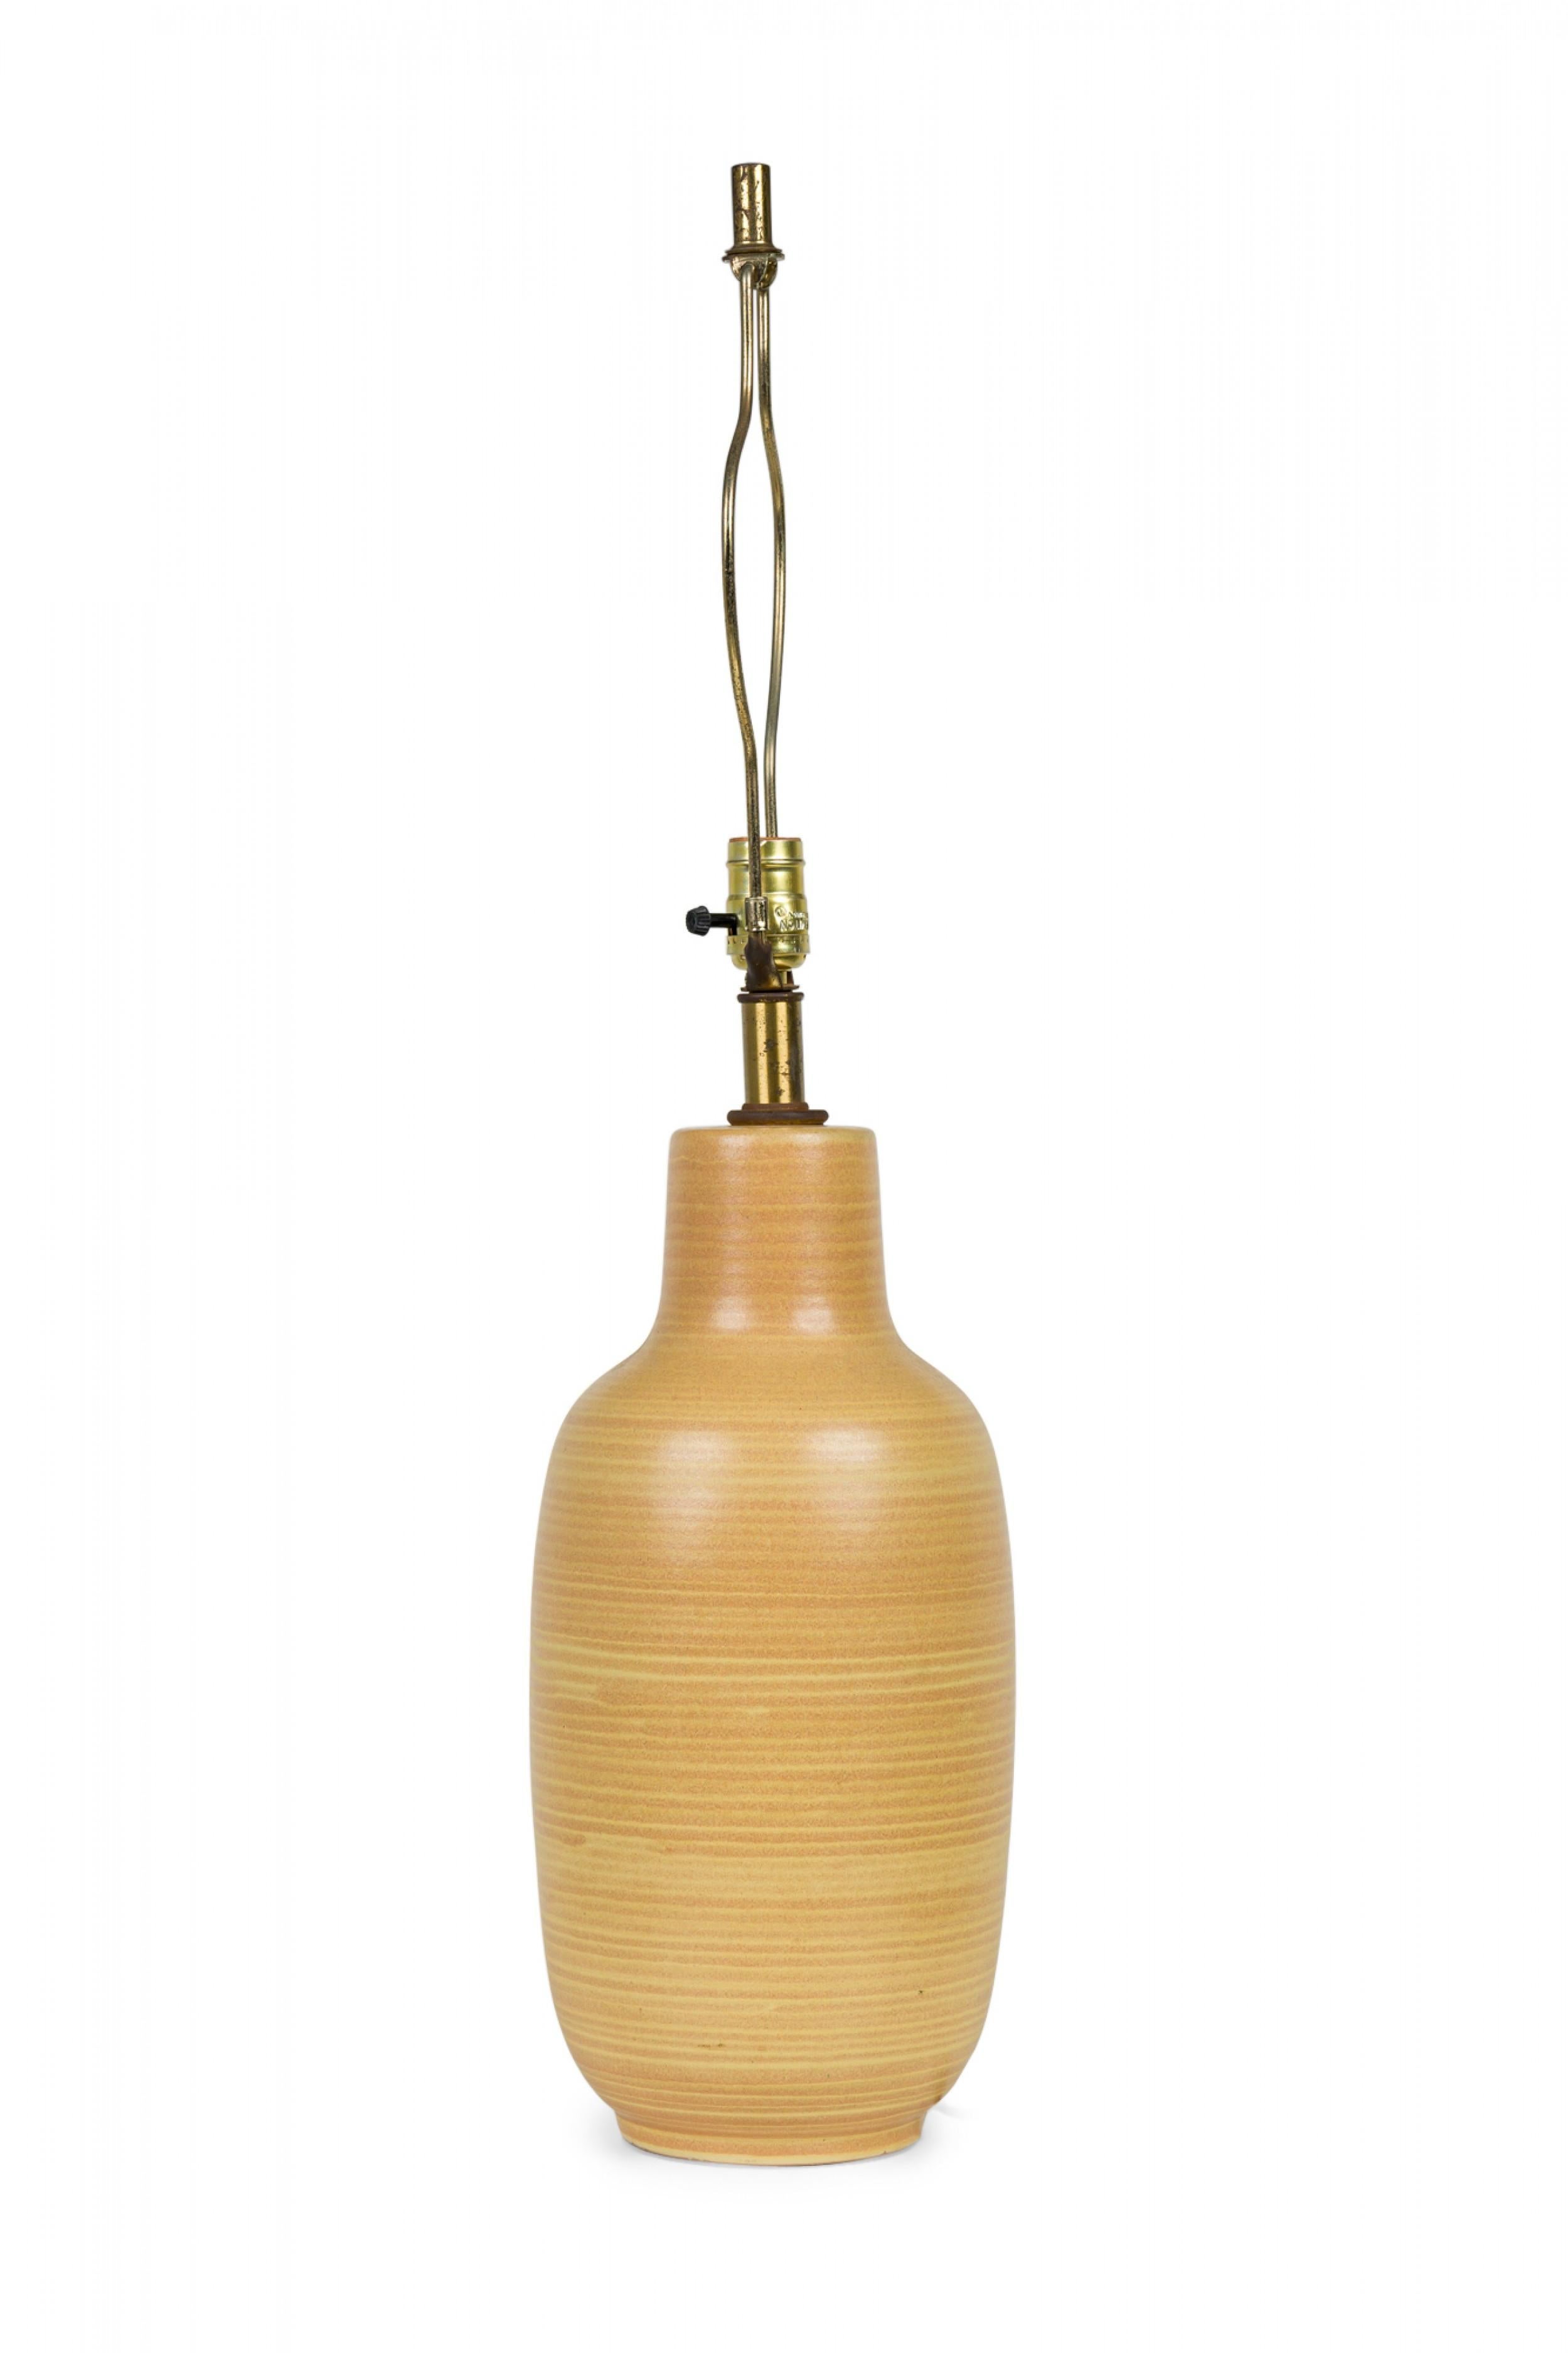 Lampe de table en céramique américaine du milieu du siècle en forme de bouteille sur pied avec une tige en laiton prolongée, une harpe, un épi de faîtage cylindrique et une prise d'interrupteur fonctionnelle, cuite dans une glaçure mate à rayures